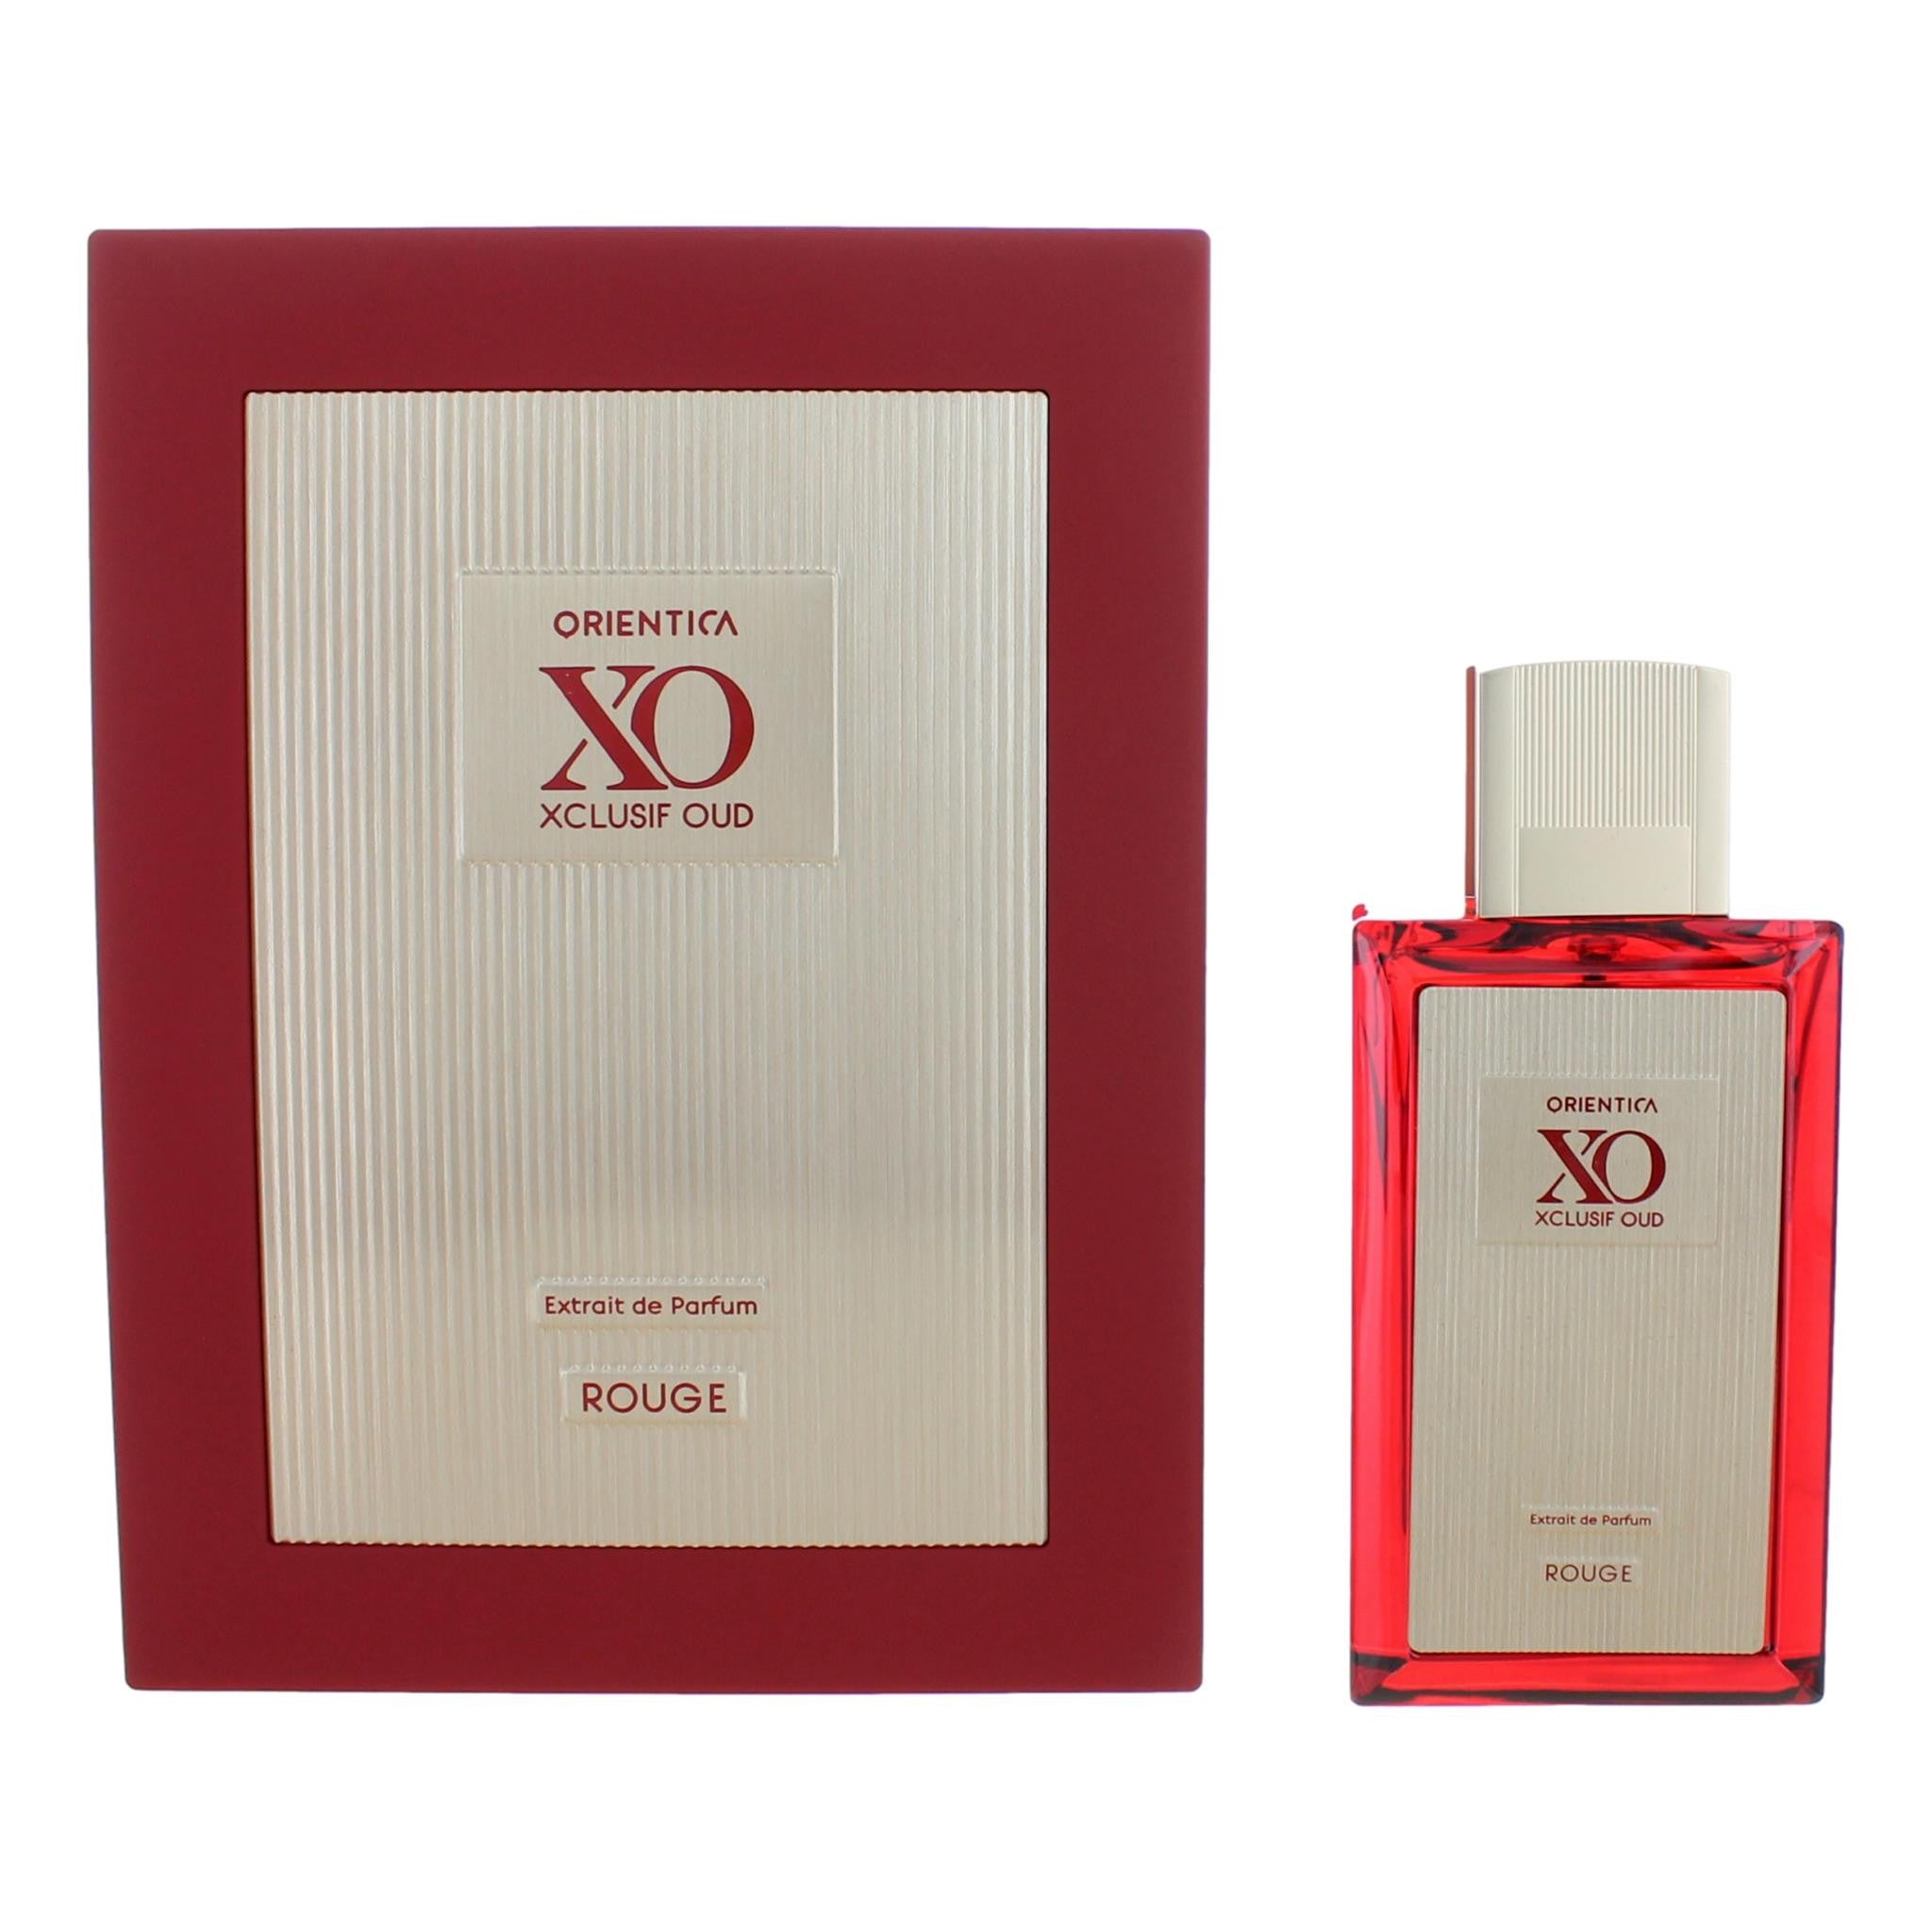 Bottle of Orientica XO Xclusif Oud Rouge by Orientica, 2 oz Extrait De Parfum for Unisex